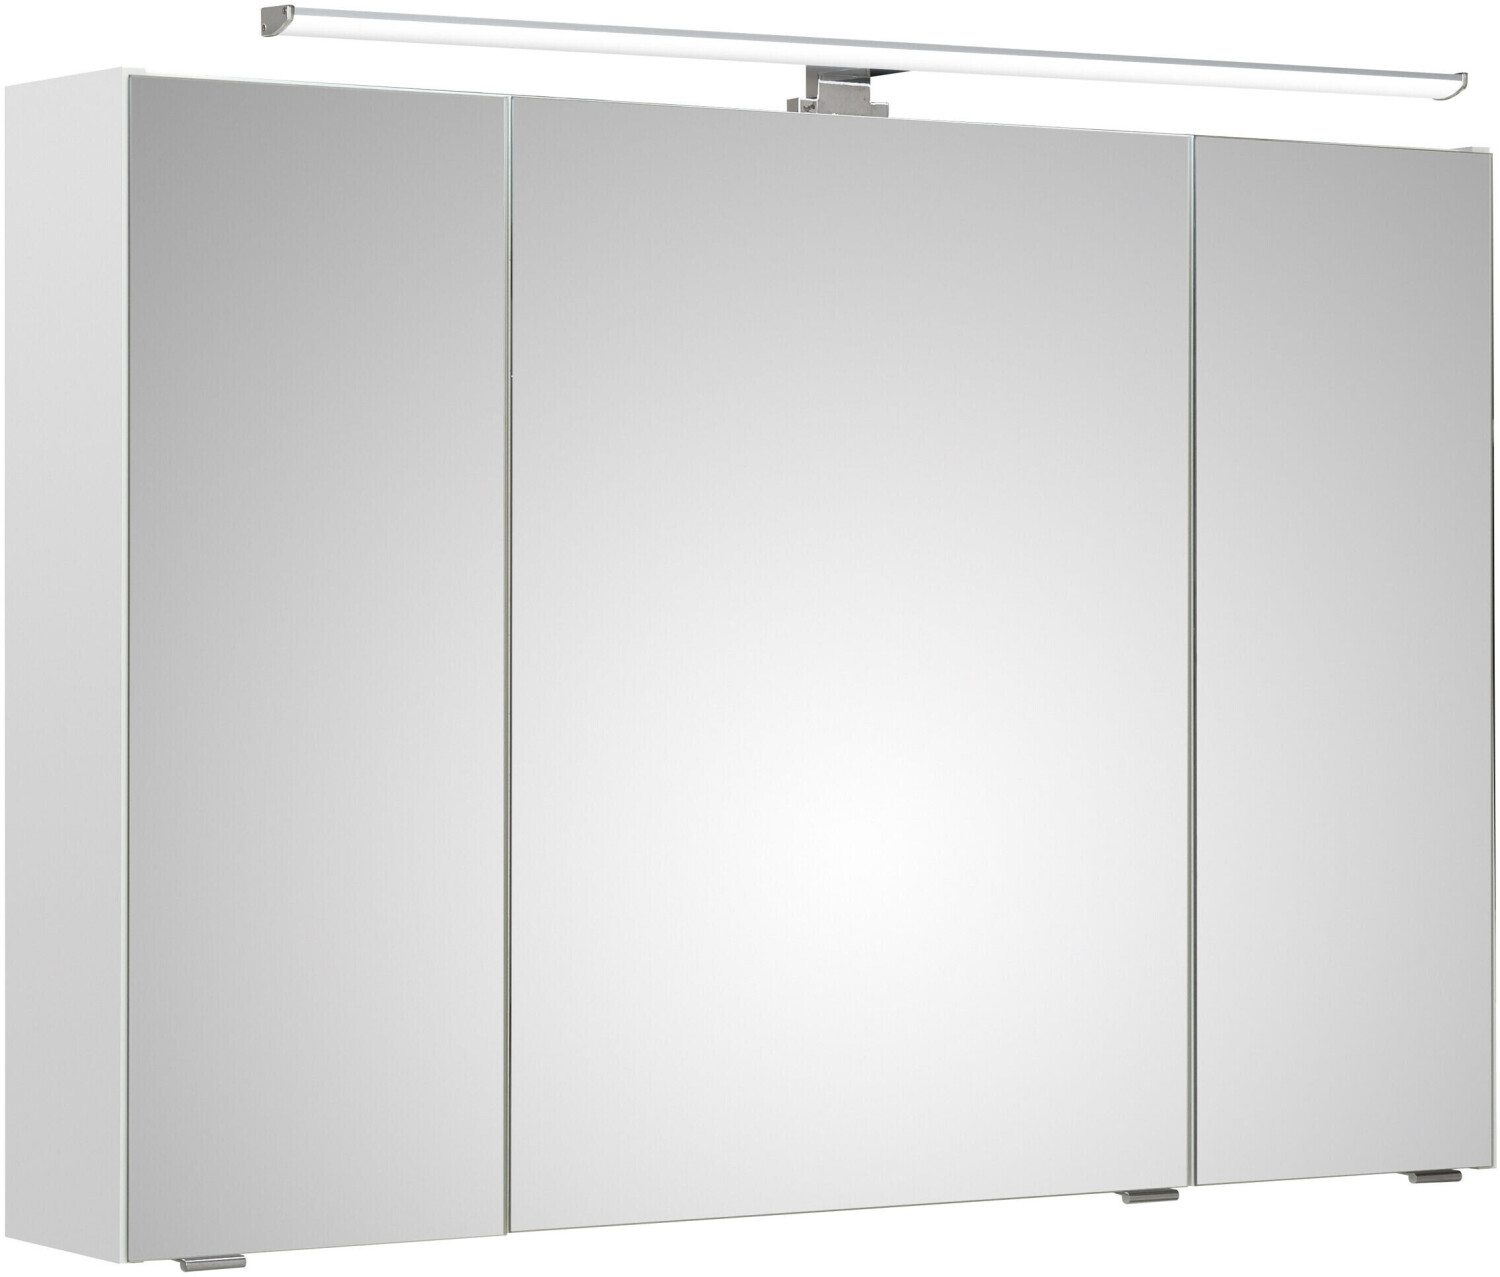 Jessi Filo 3 Spiegeltüren Glanz Spiegelschrank Weiß € 341 Aufsatzleuchte | ab bei Weiss 299,00 Preisvergleich III Pelipal